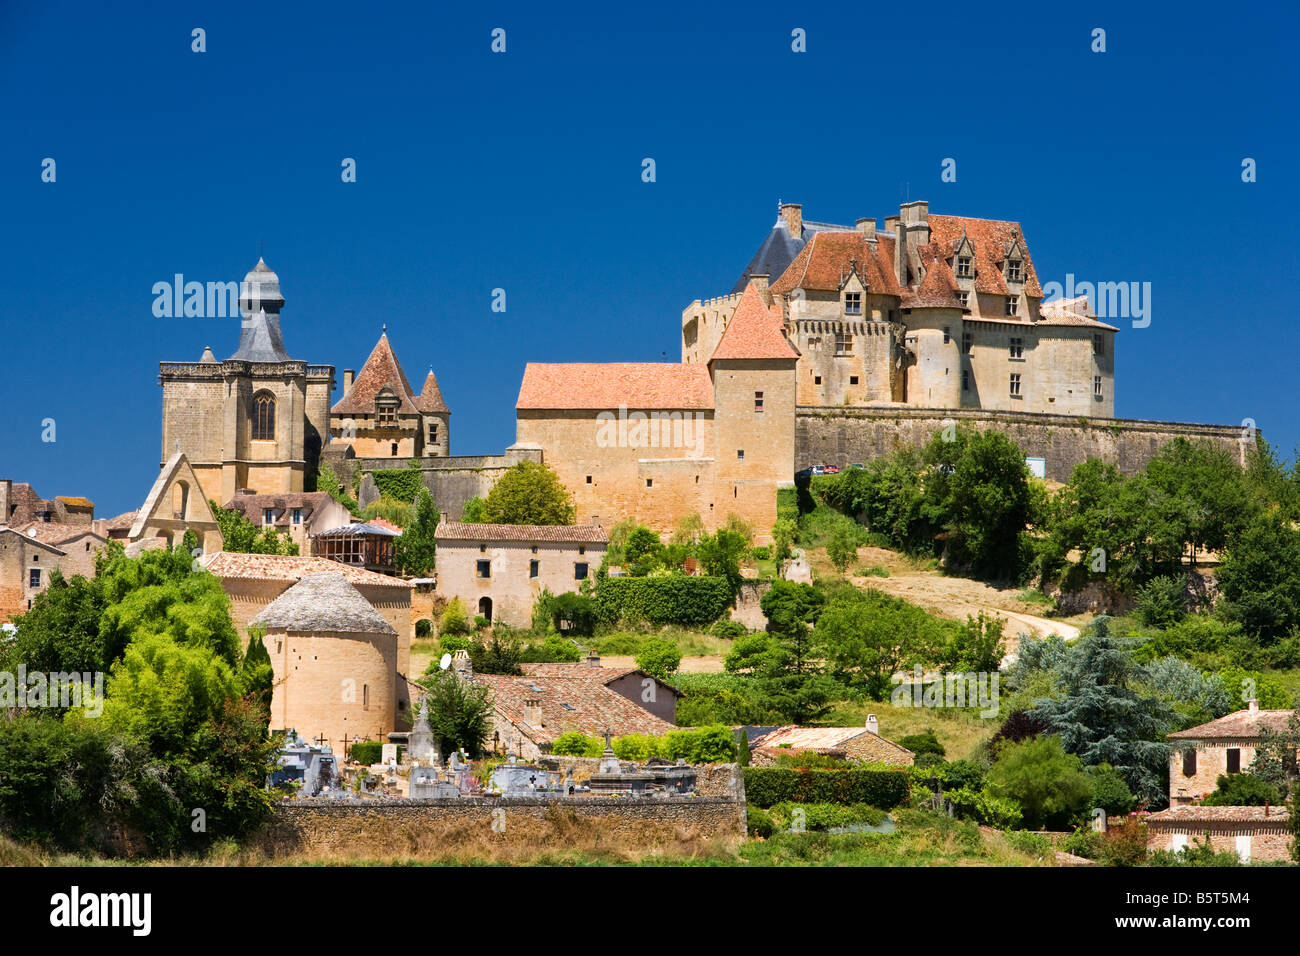 Chateau de Biron ein typisch französisches Mittelalter Schloss in der Dordogne-Region von Frankreich, Europa Stockfoto